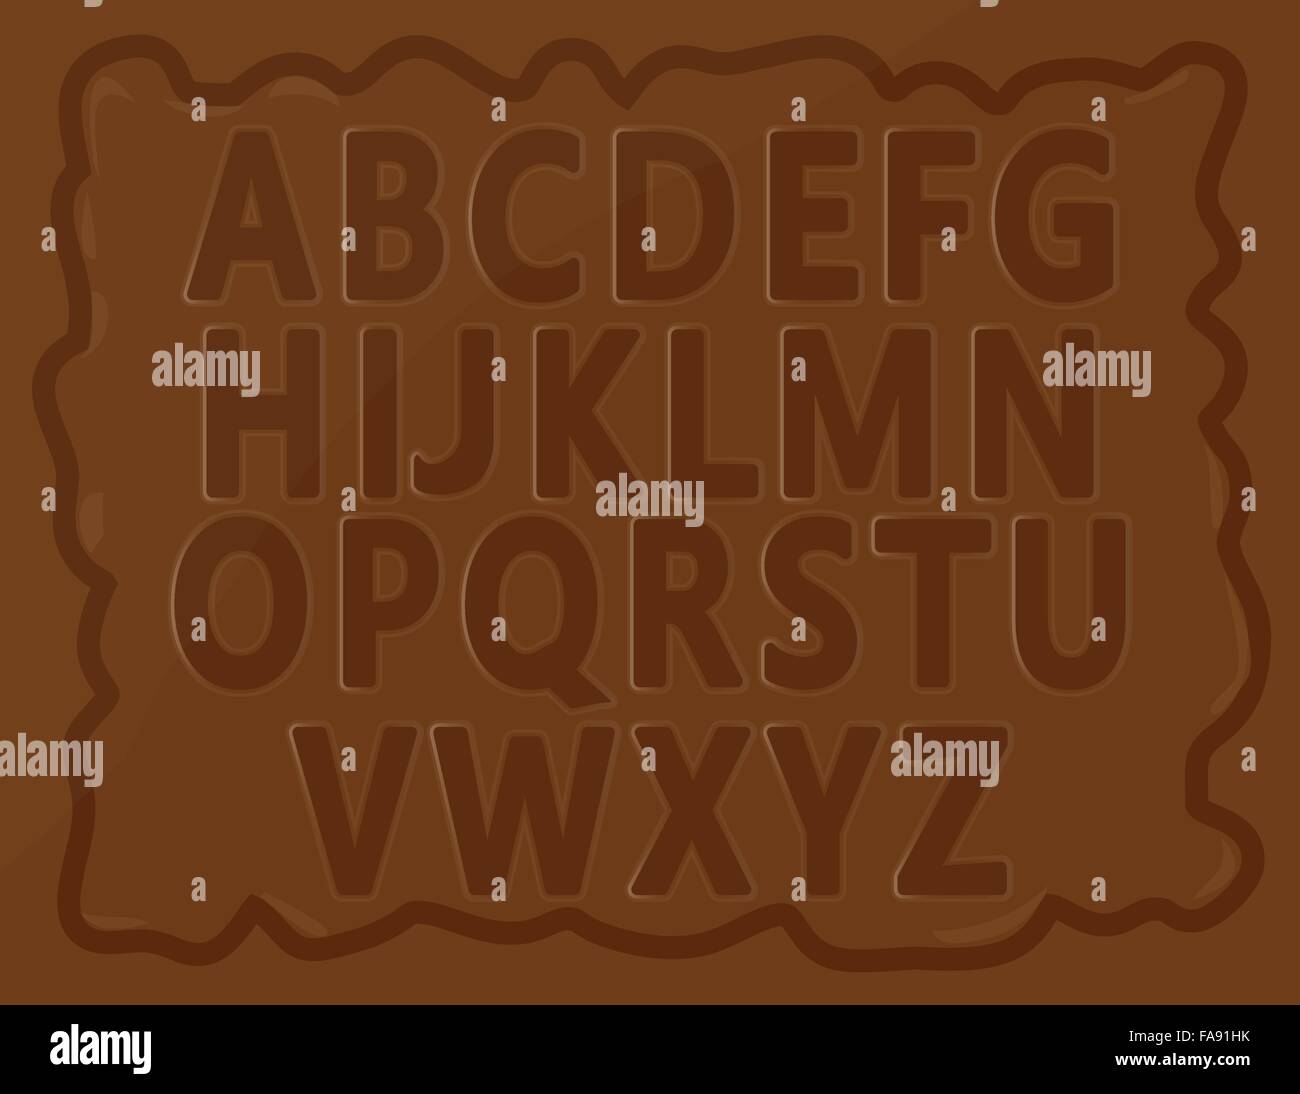 Alphabets anglais pour les enfants écrits sur barre de chocolat. Bien arrangé vector eps10 est inclus. Illustration de Vecteur